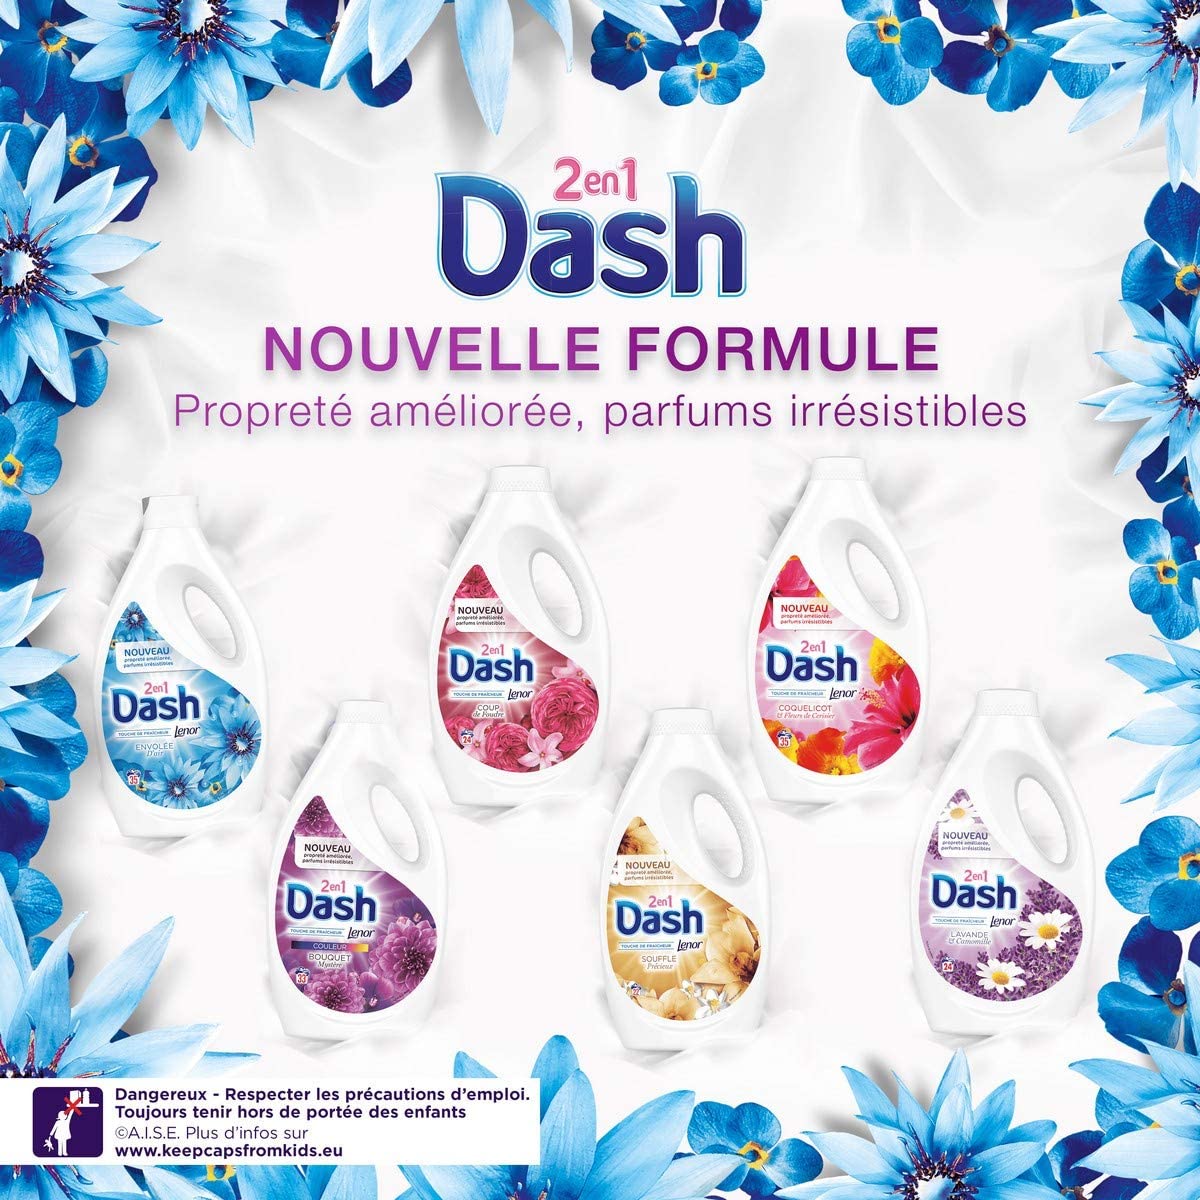 Dash Dash lessive liquide ou en poudre universal ou color - En